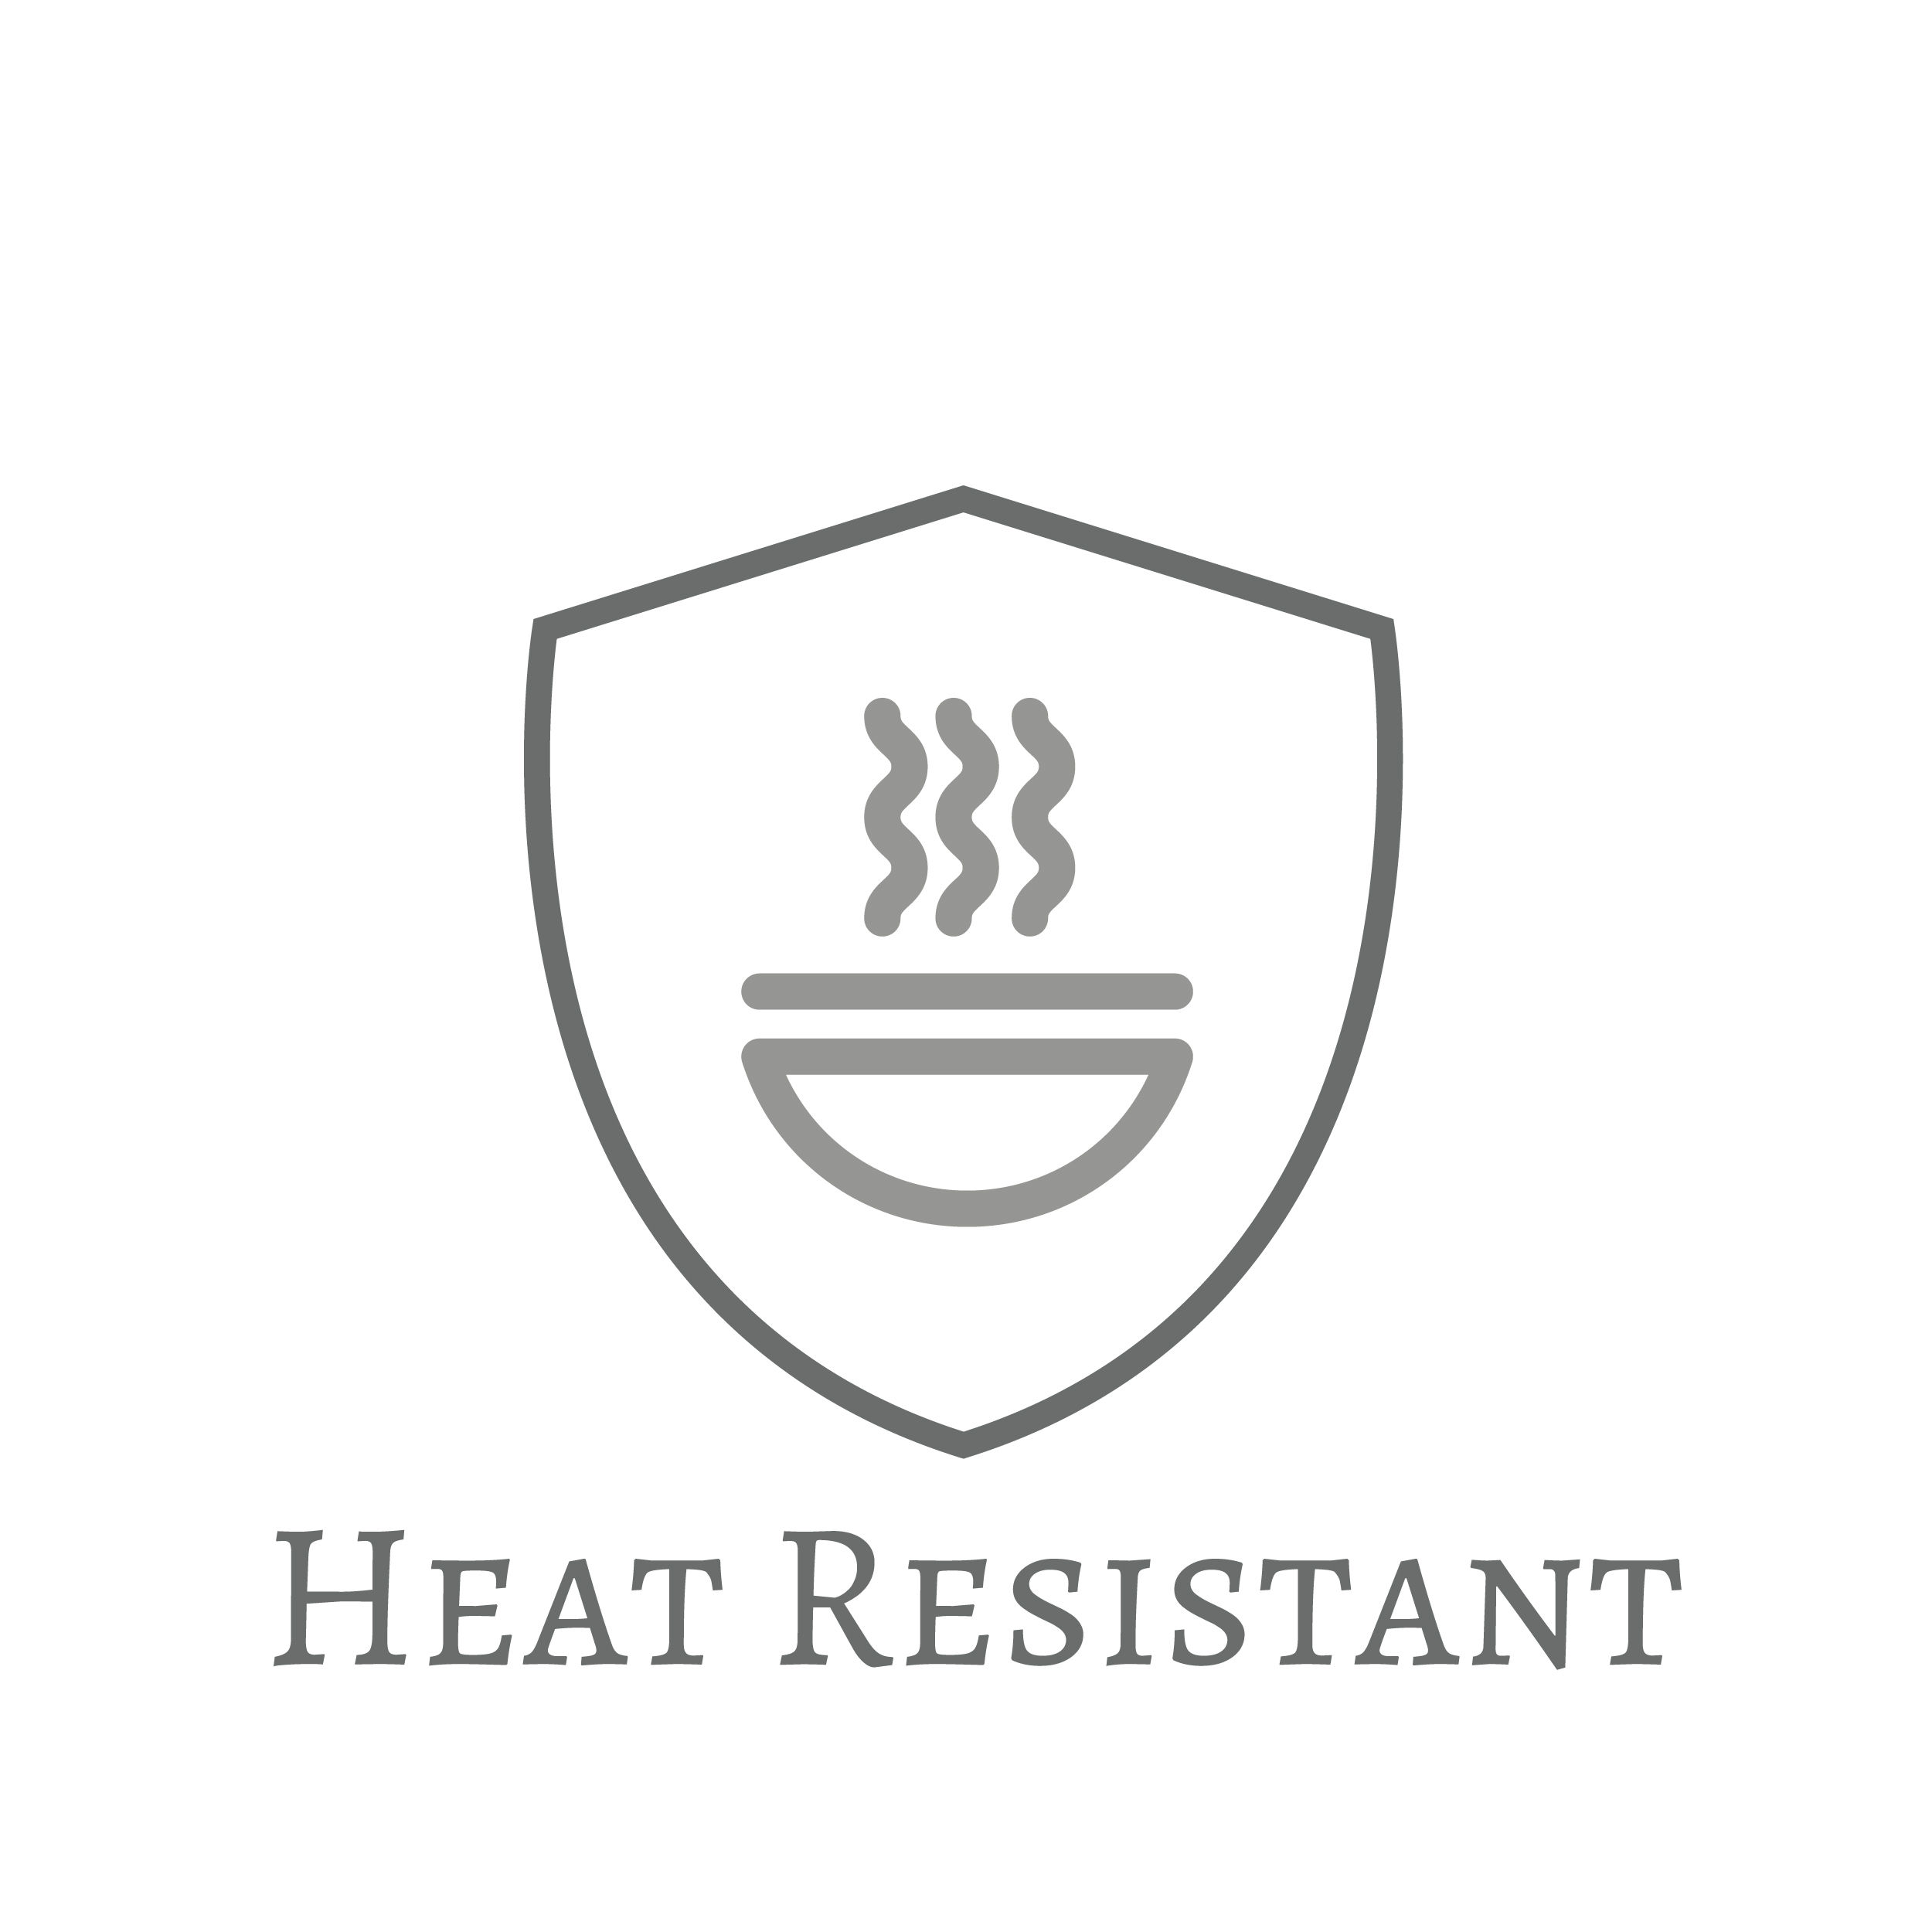 Heat Resistant Icon.jpg